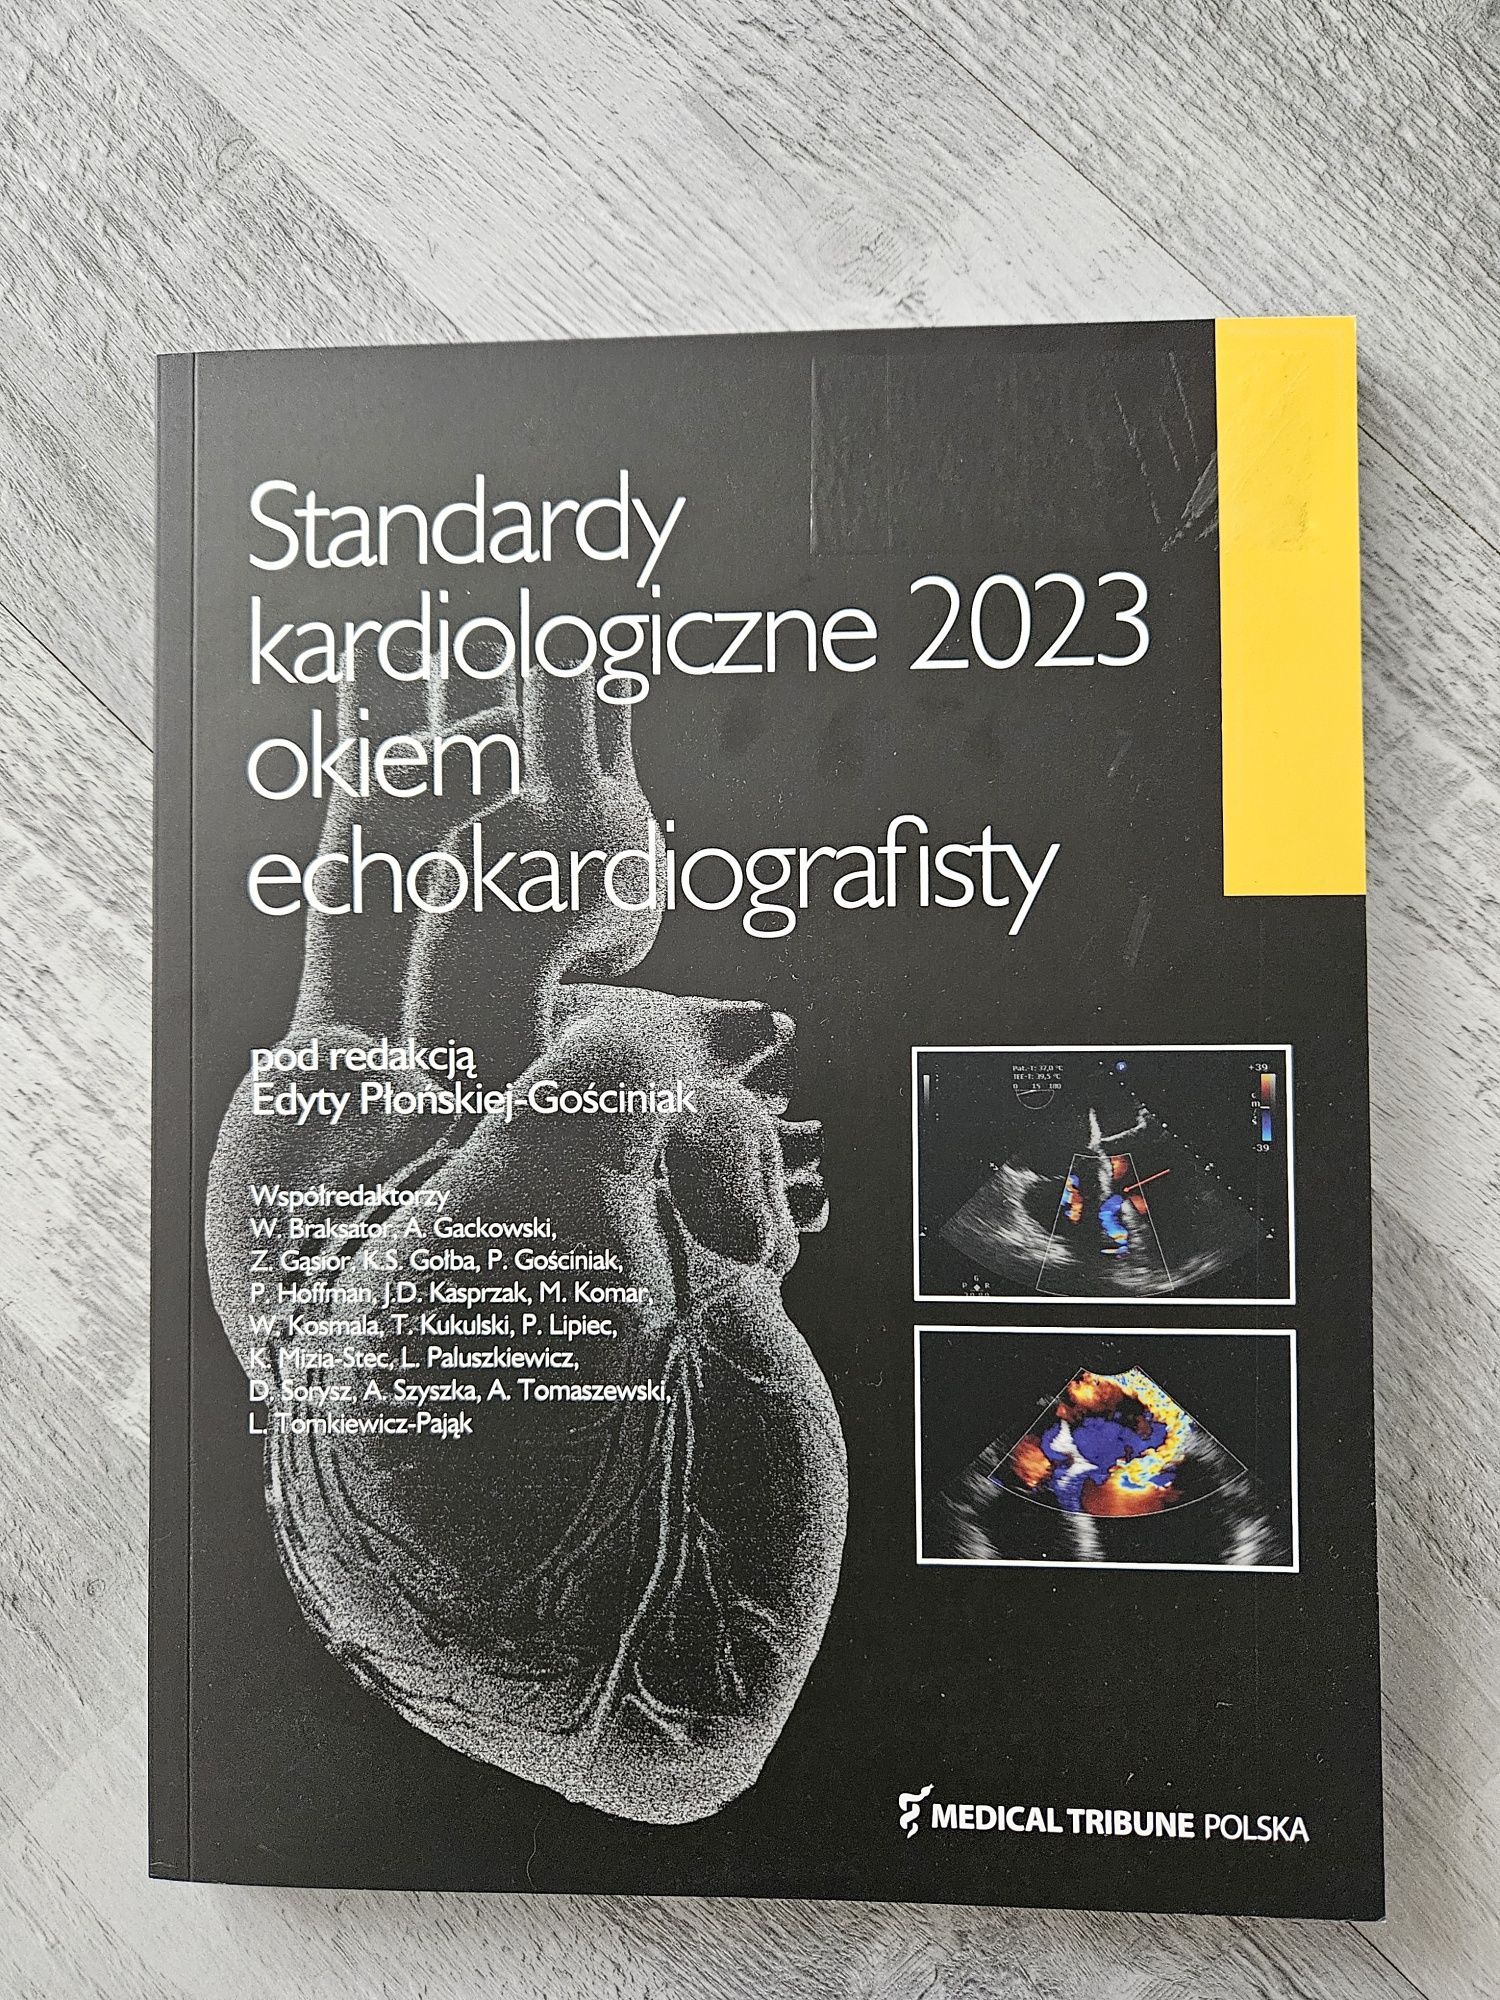 Standardy kardiologiczne okiem echokardiografisty 2023